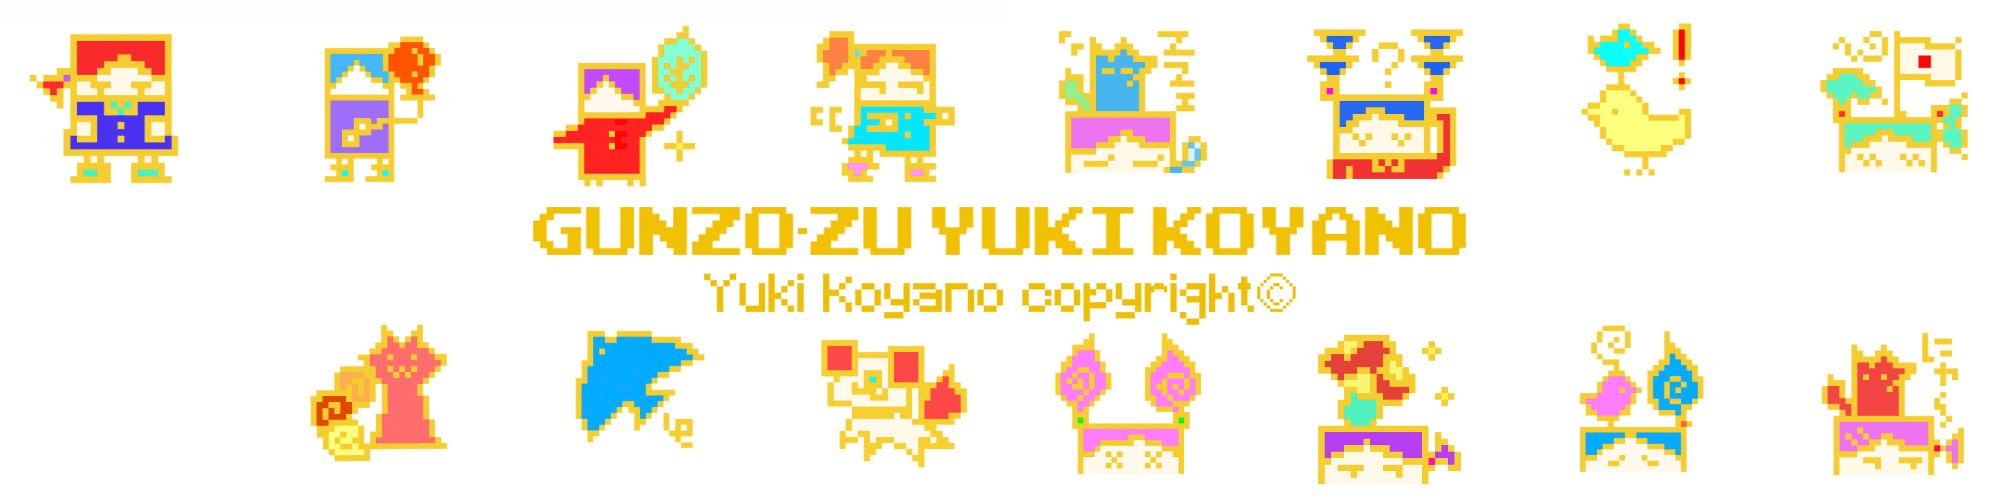 YUKI_KOYANO_Gunzo-zu banner